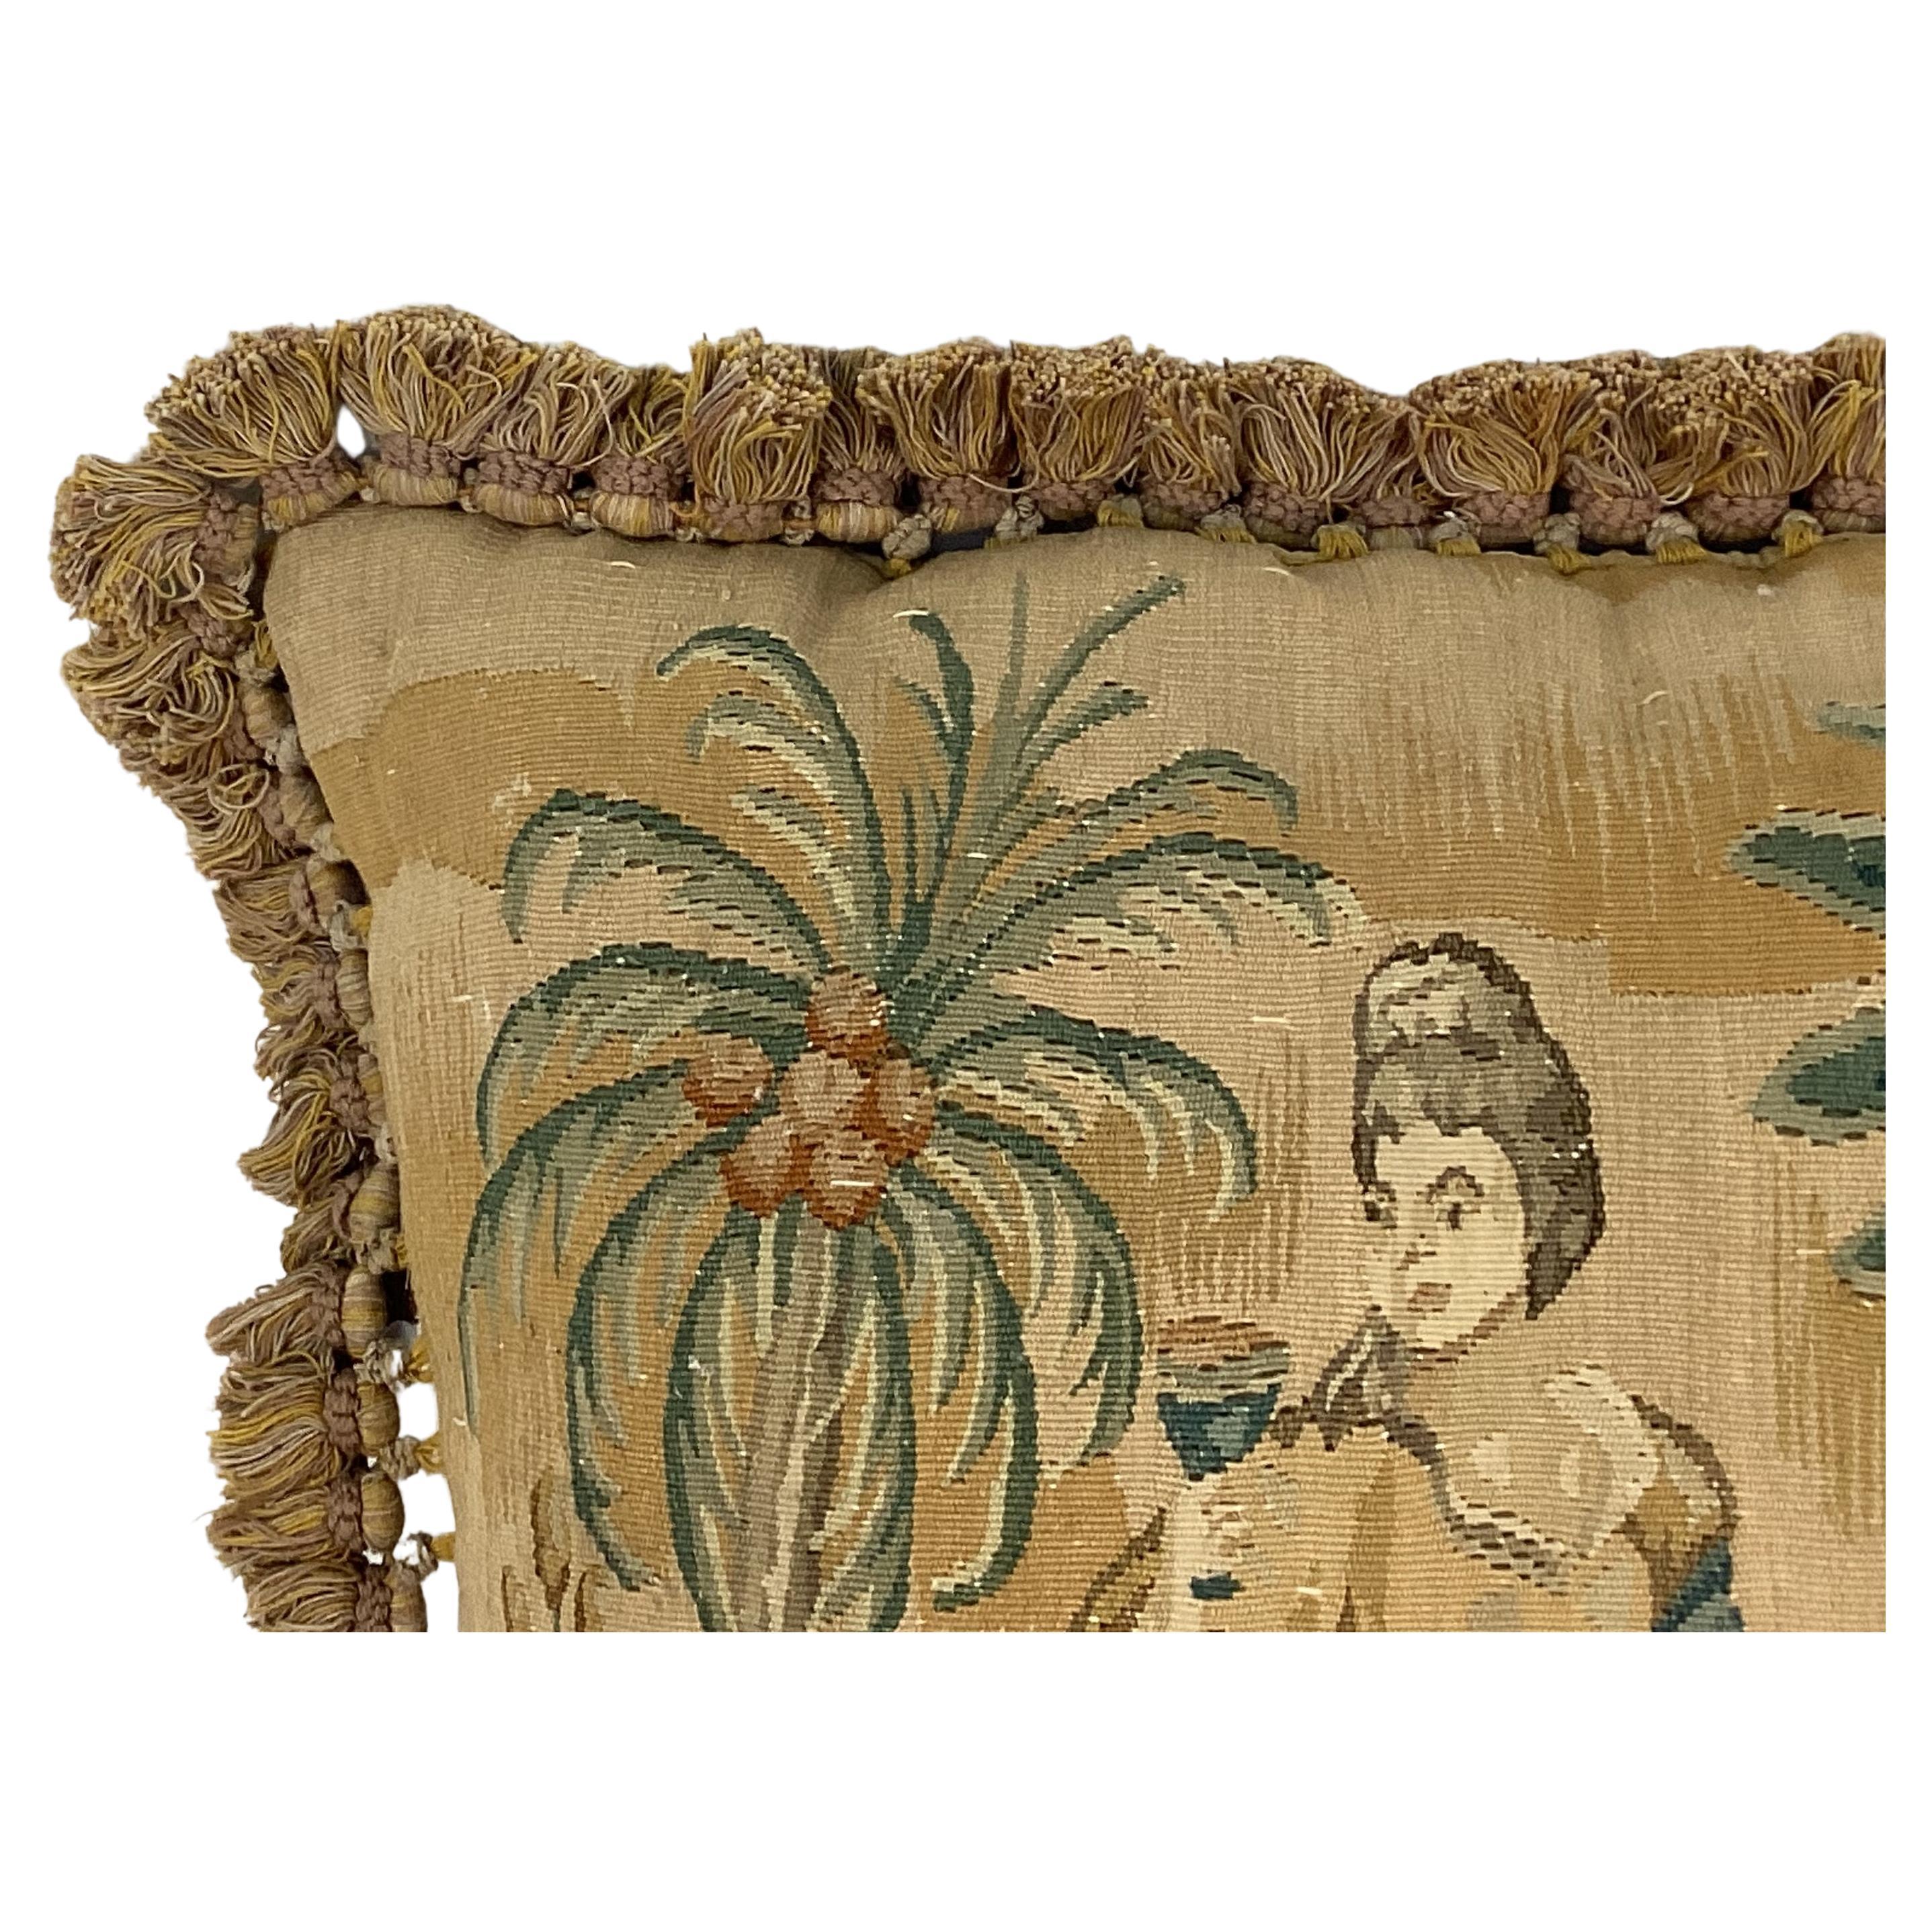 Tapisserie française du 19ème siècle tissée à la main sur mesure avec un coussin (inclus).  La tapisserie présente un magnifique décor extérieur d'une femme mangeant des fruits sous des palmiers dans des couleurs douces de tan, de vert et de marron.